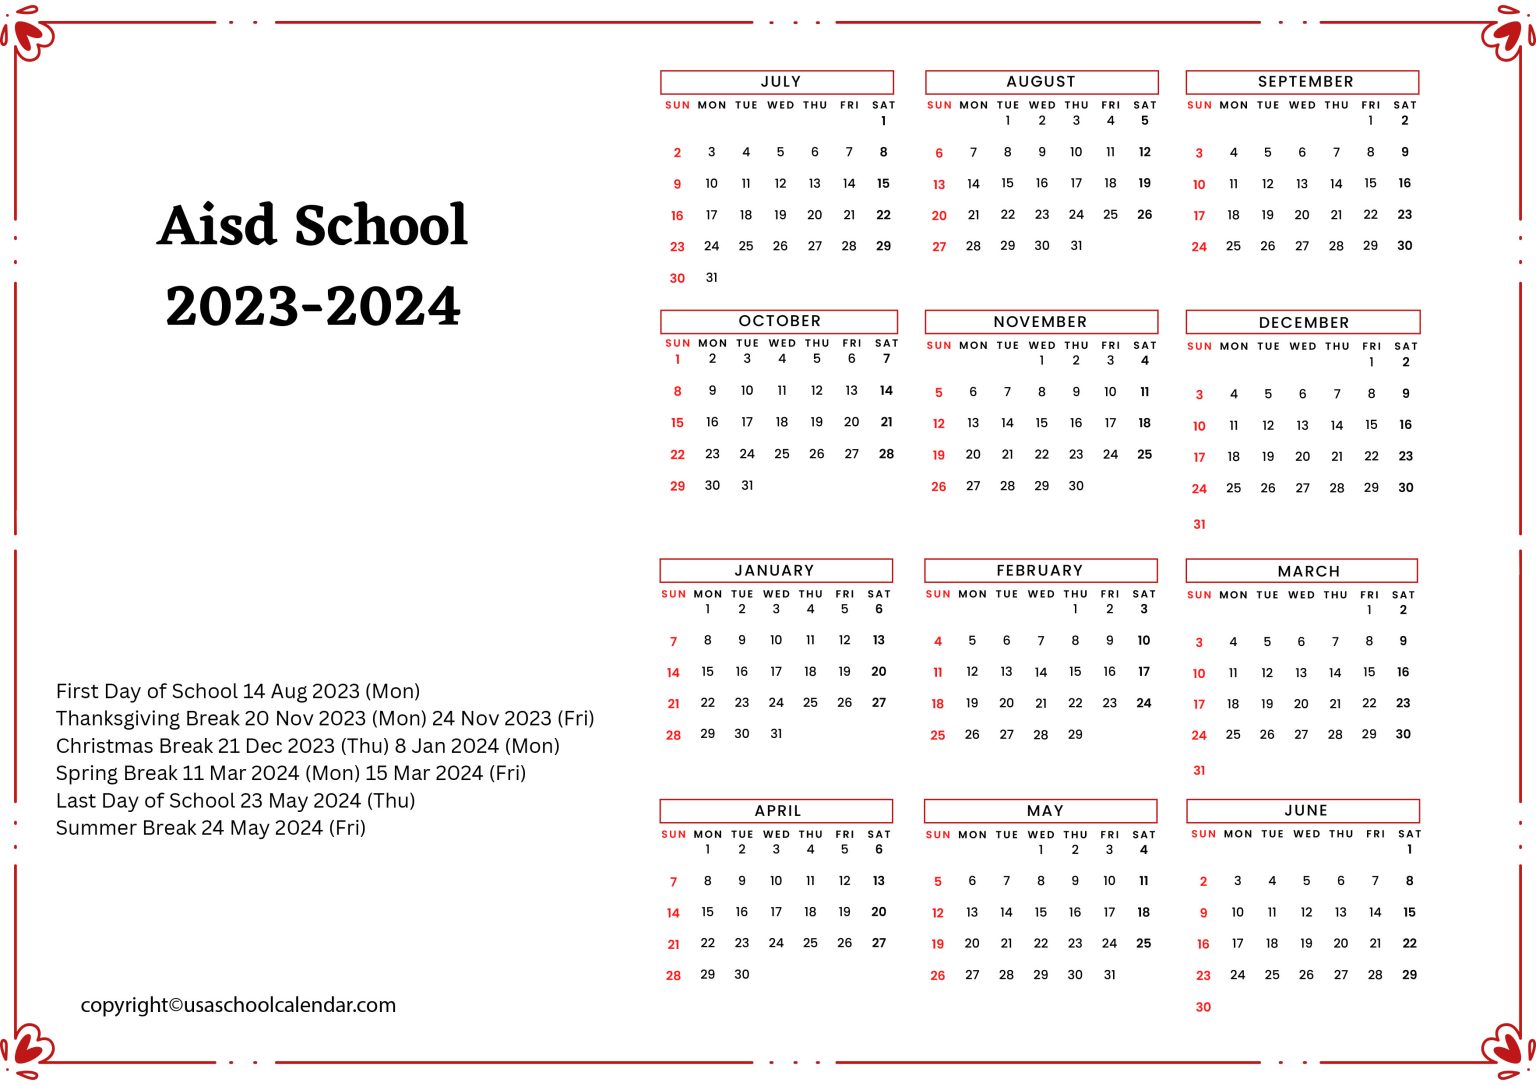 AISD School Calendar Holidays 20232024 [Austin ISD]